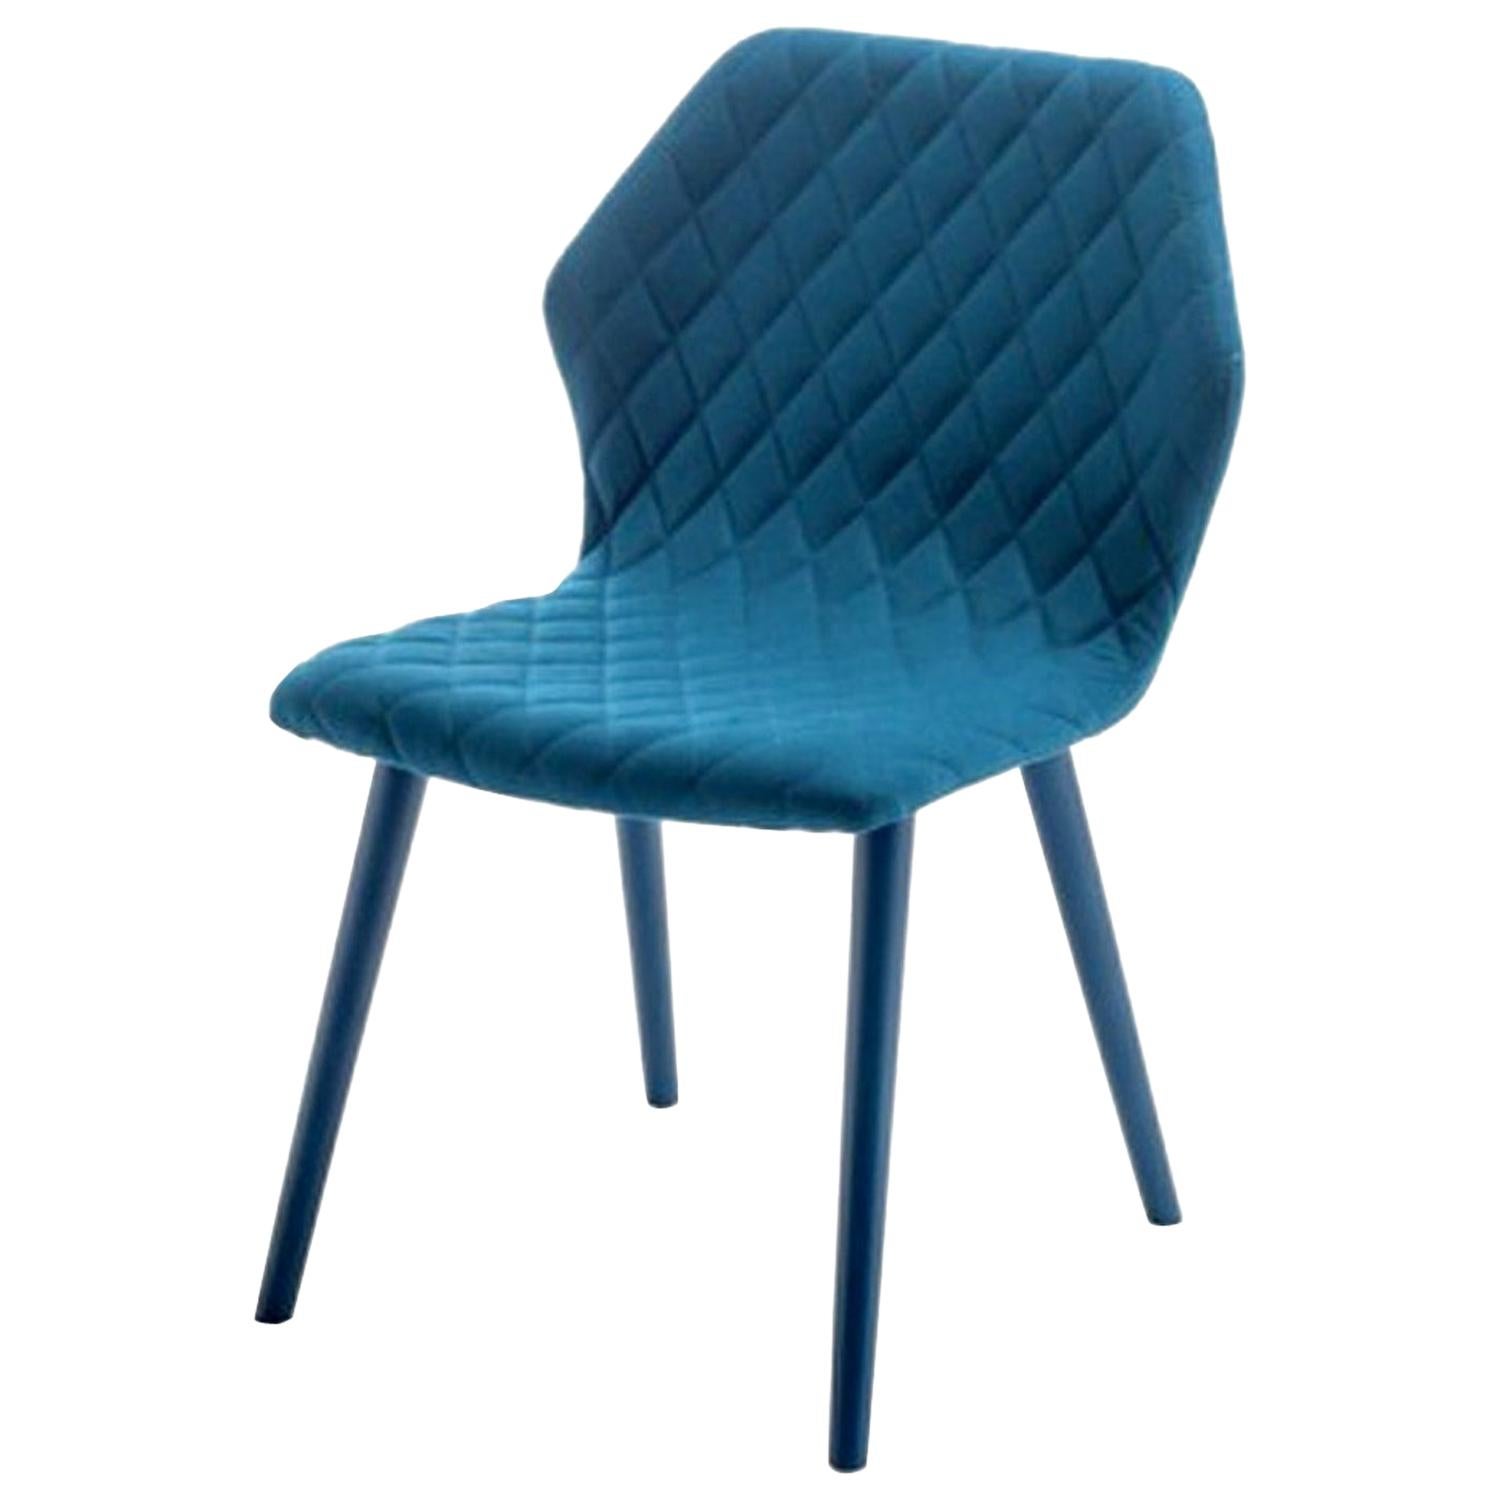 Ava Blauer gesteppter Stuhl aus Leder, entworfen von Michael Schmidt, hergestellt in Italien